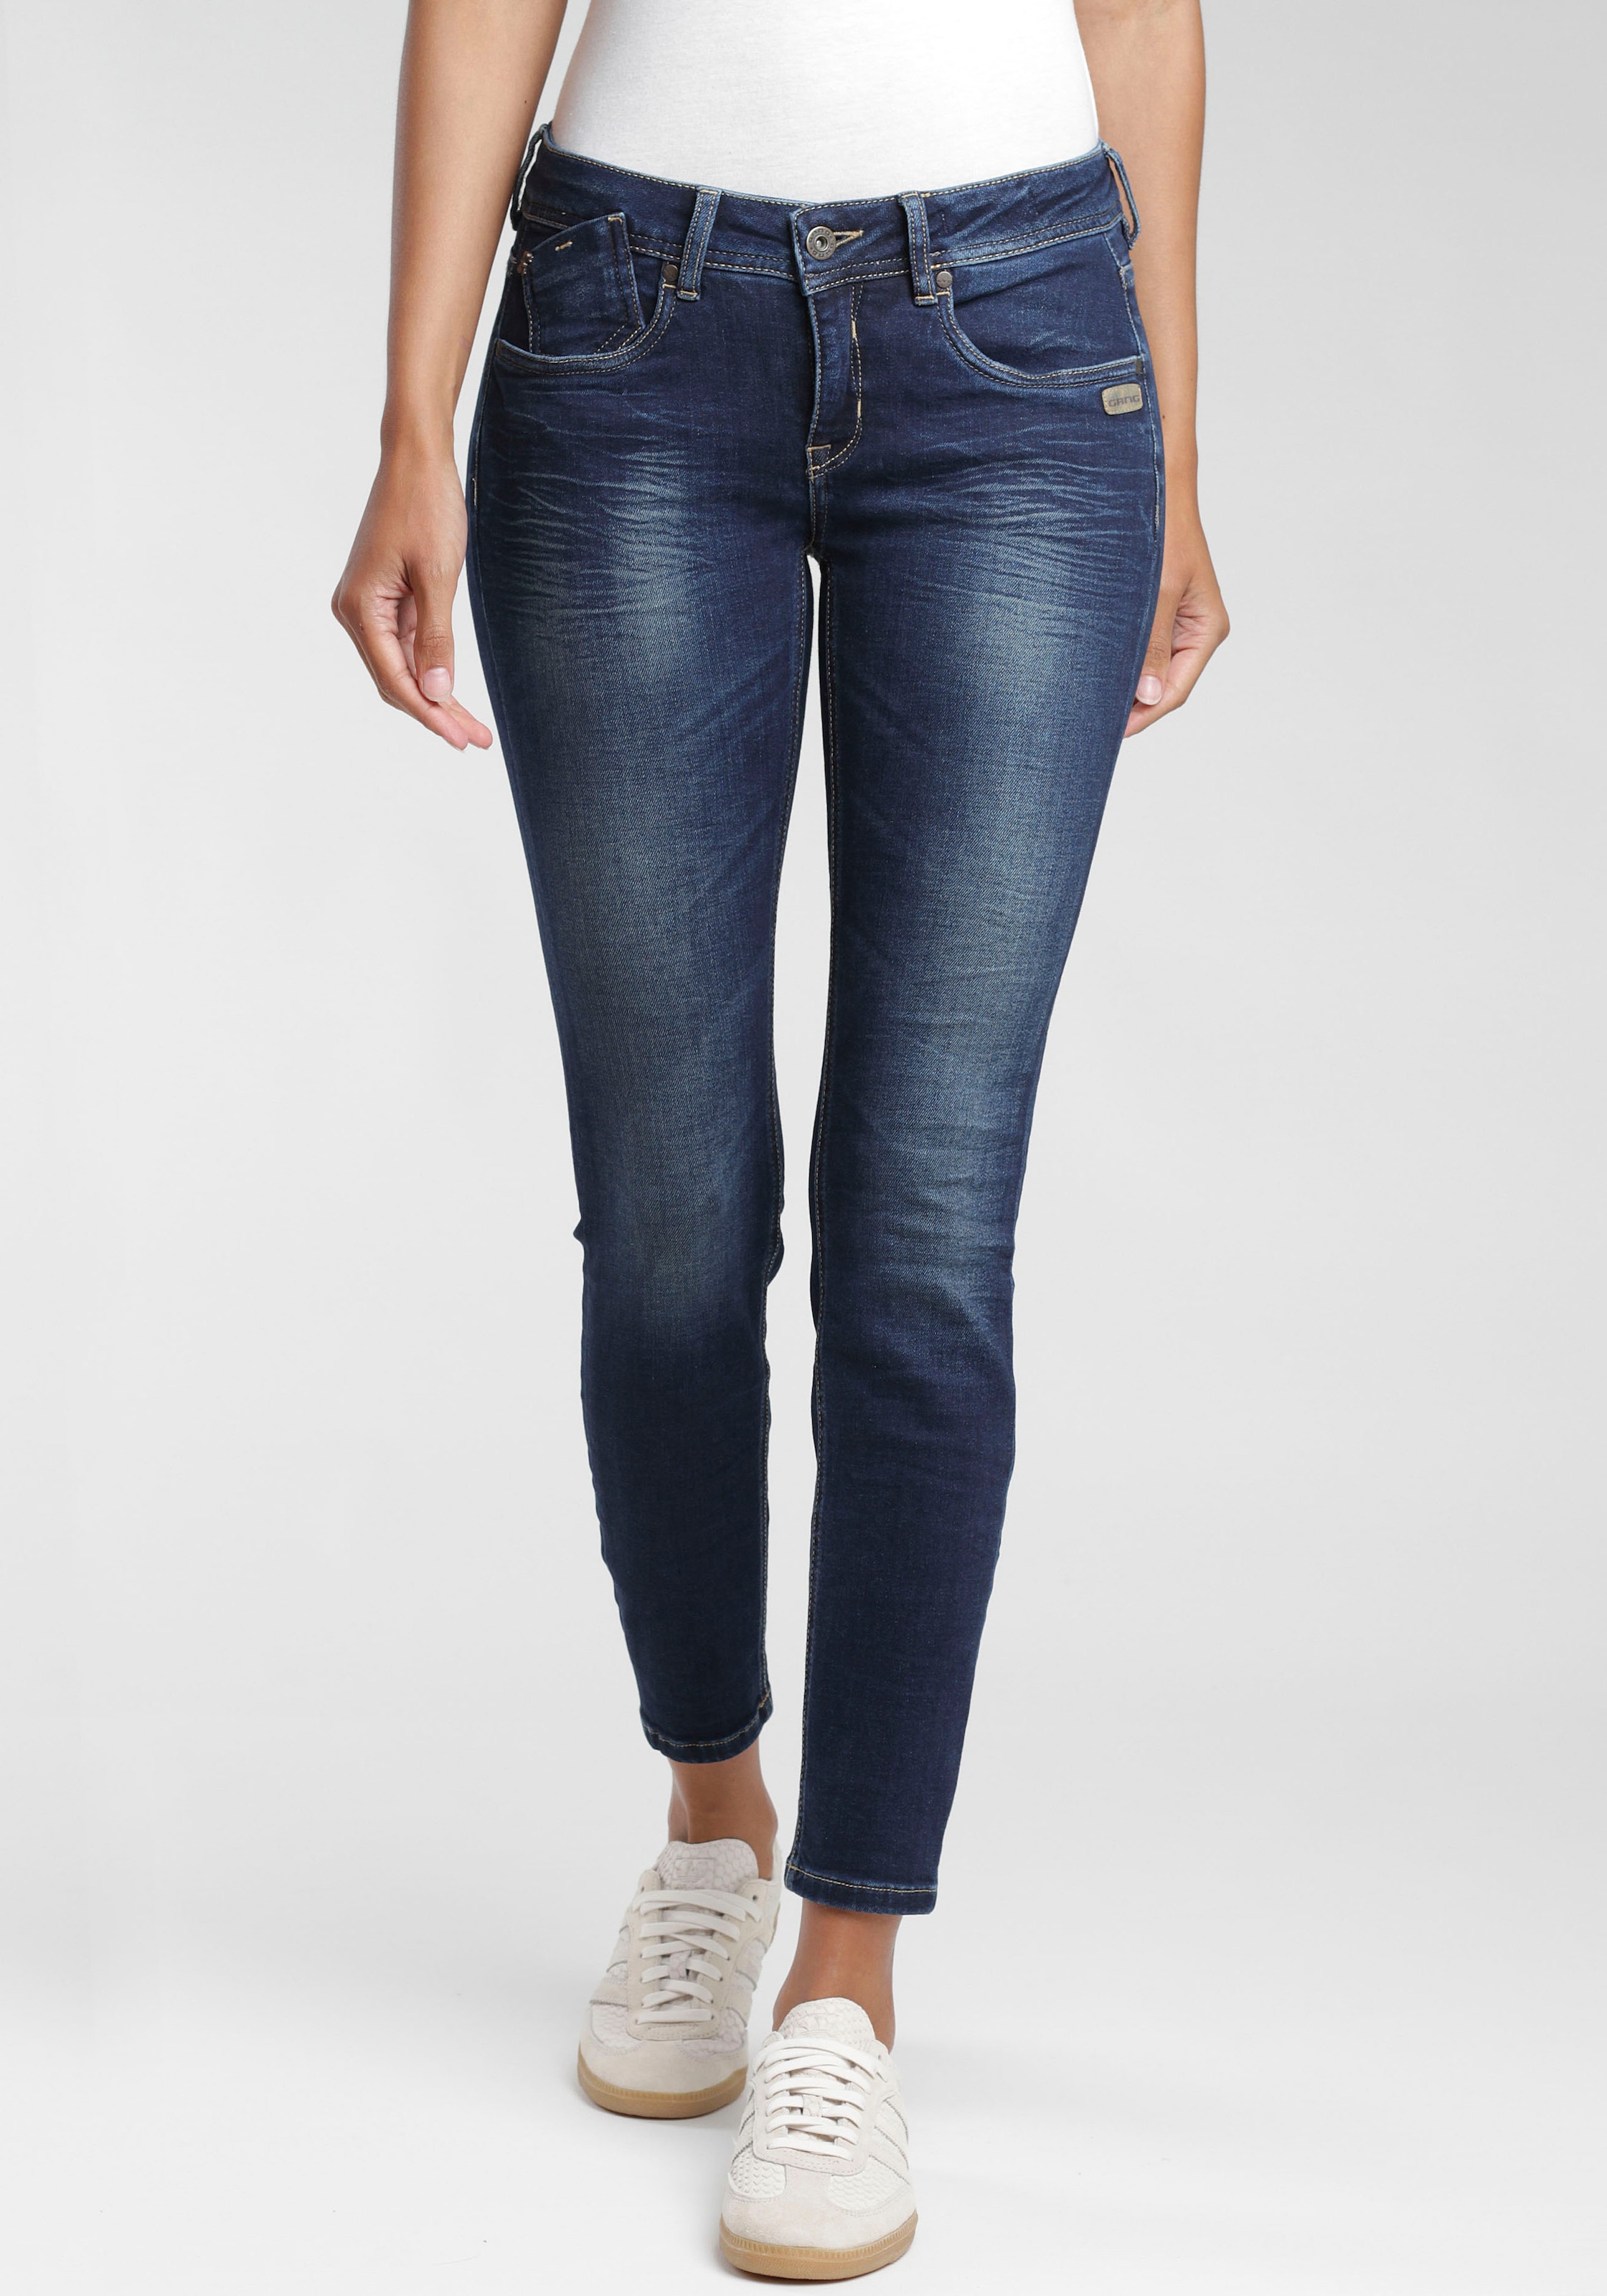 bestellen Flanking-Style im Skinny-fit-Jeans jetzt »Faye«, GANG